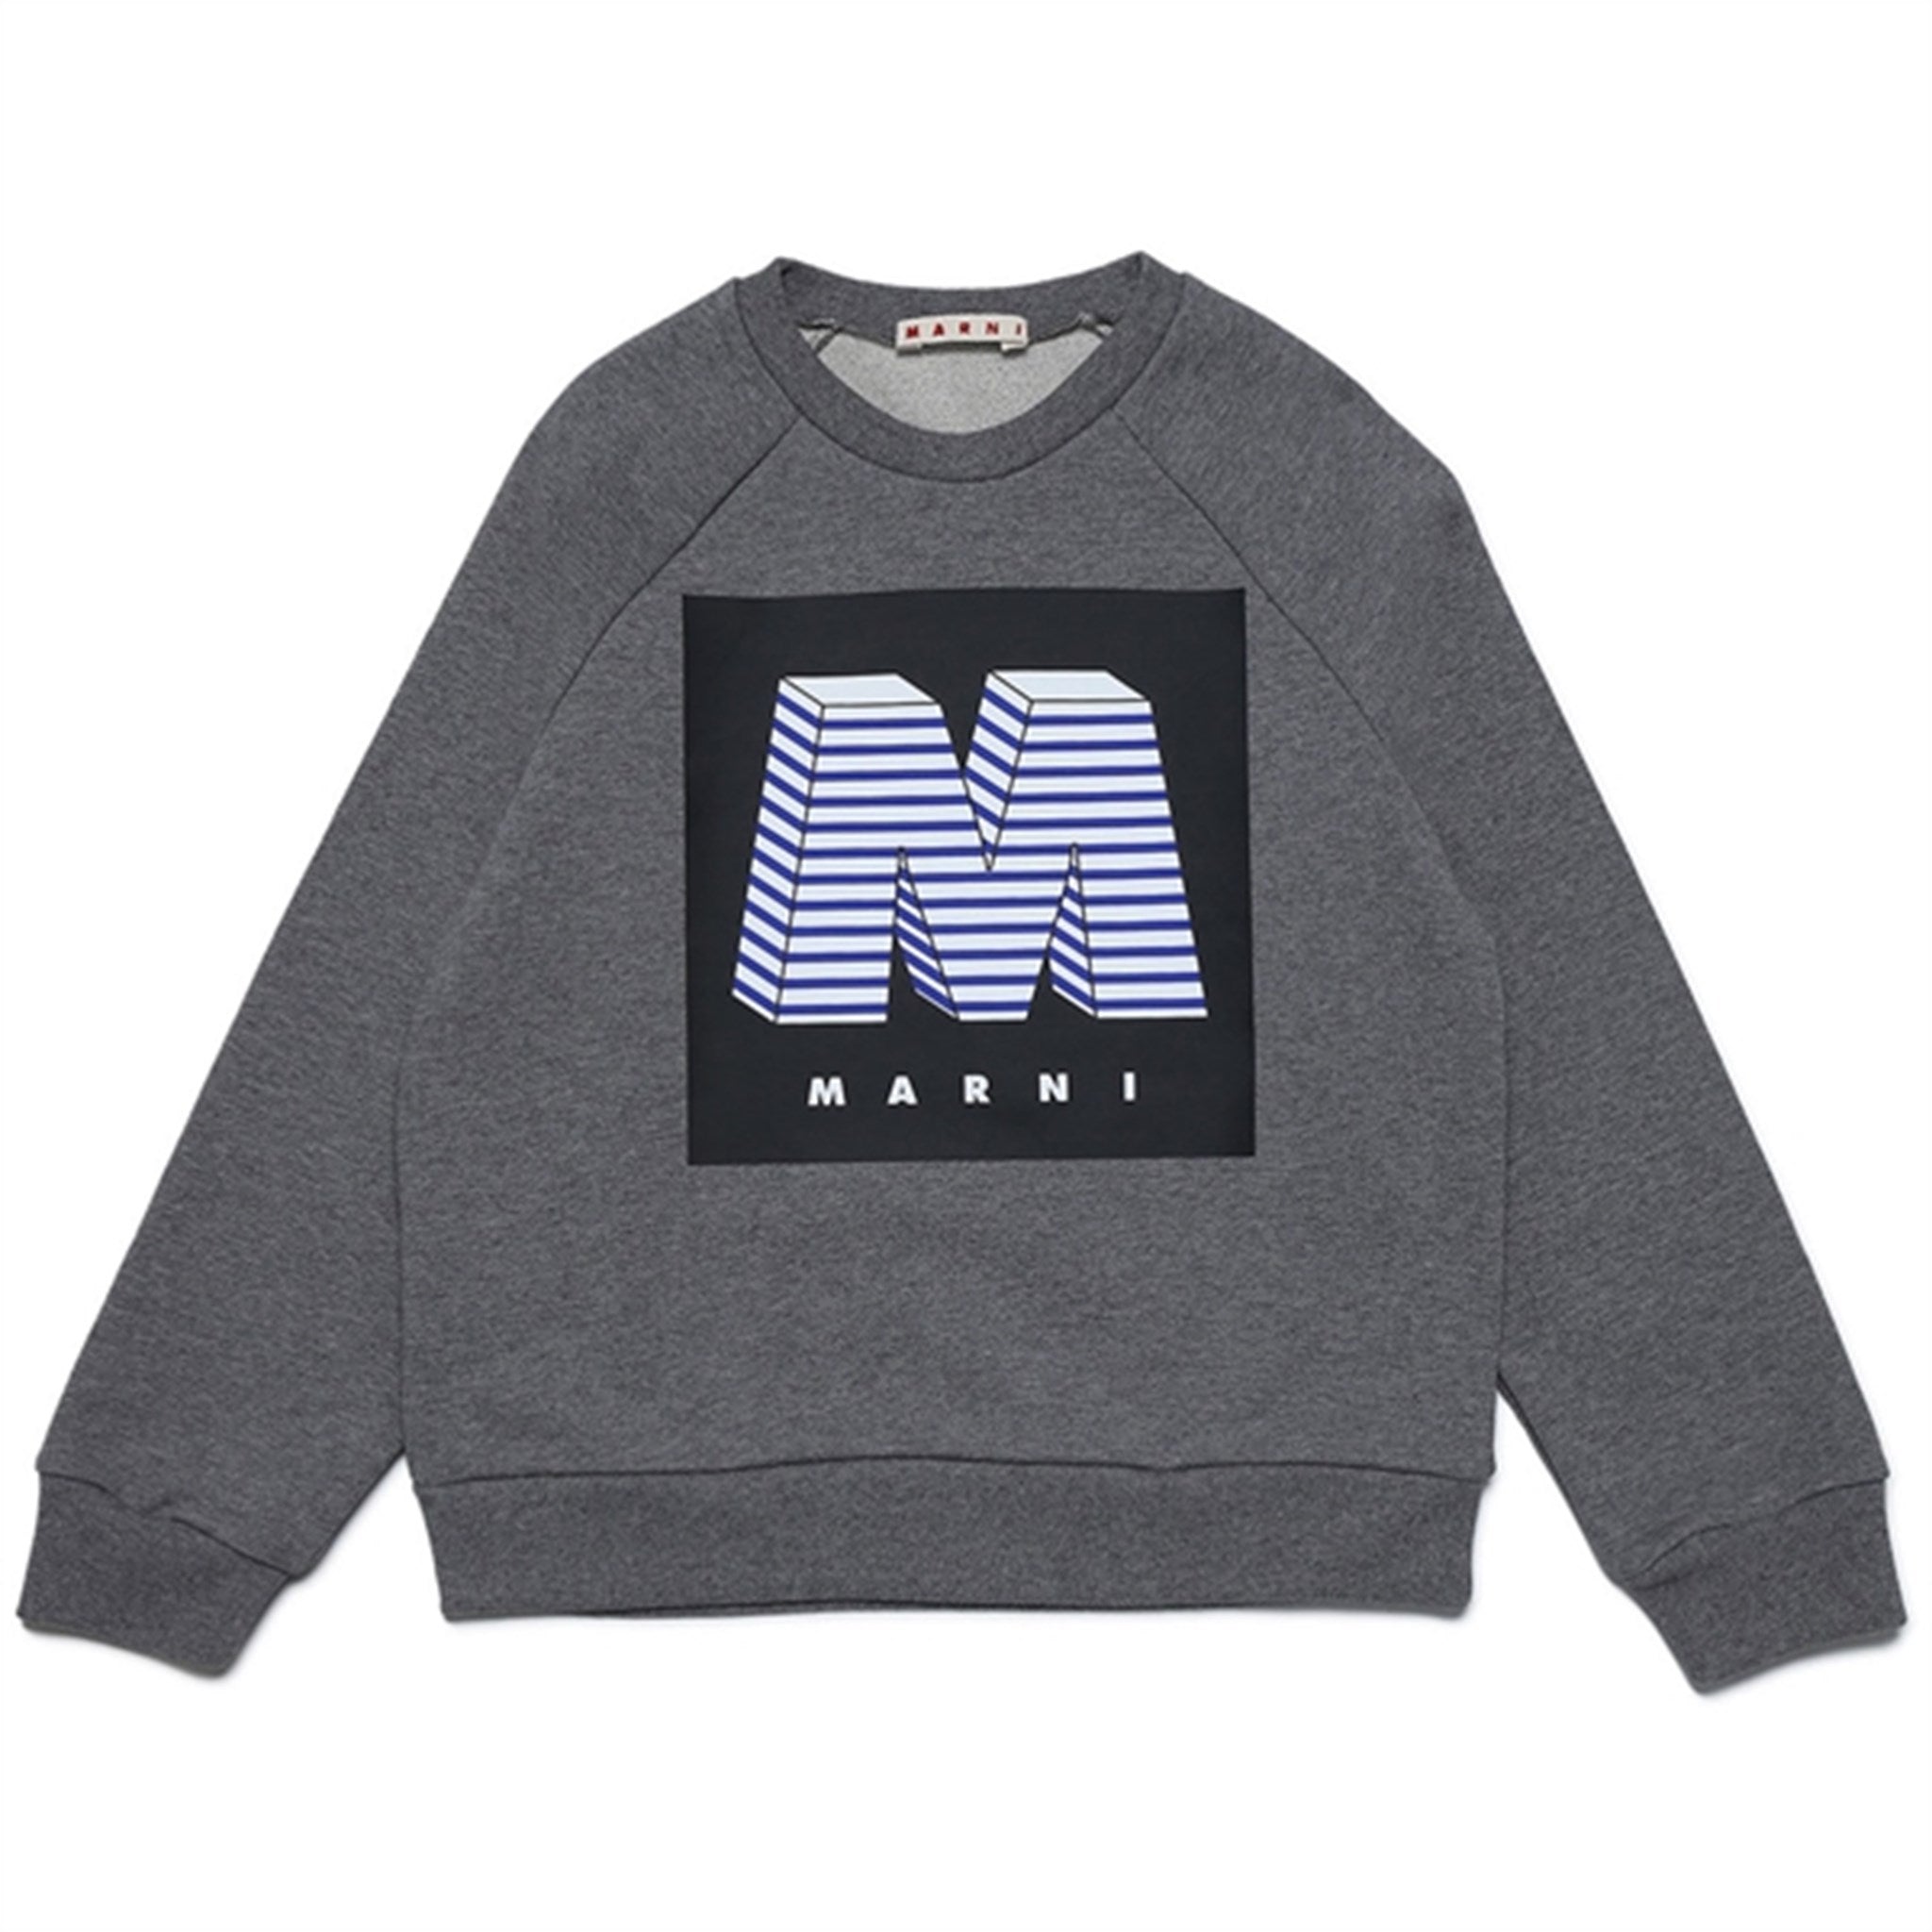 Marni Medium Gray Sweatshirt